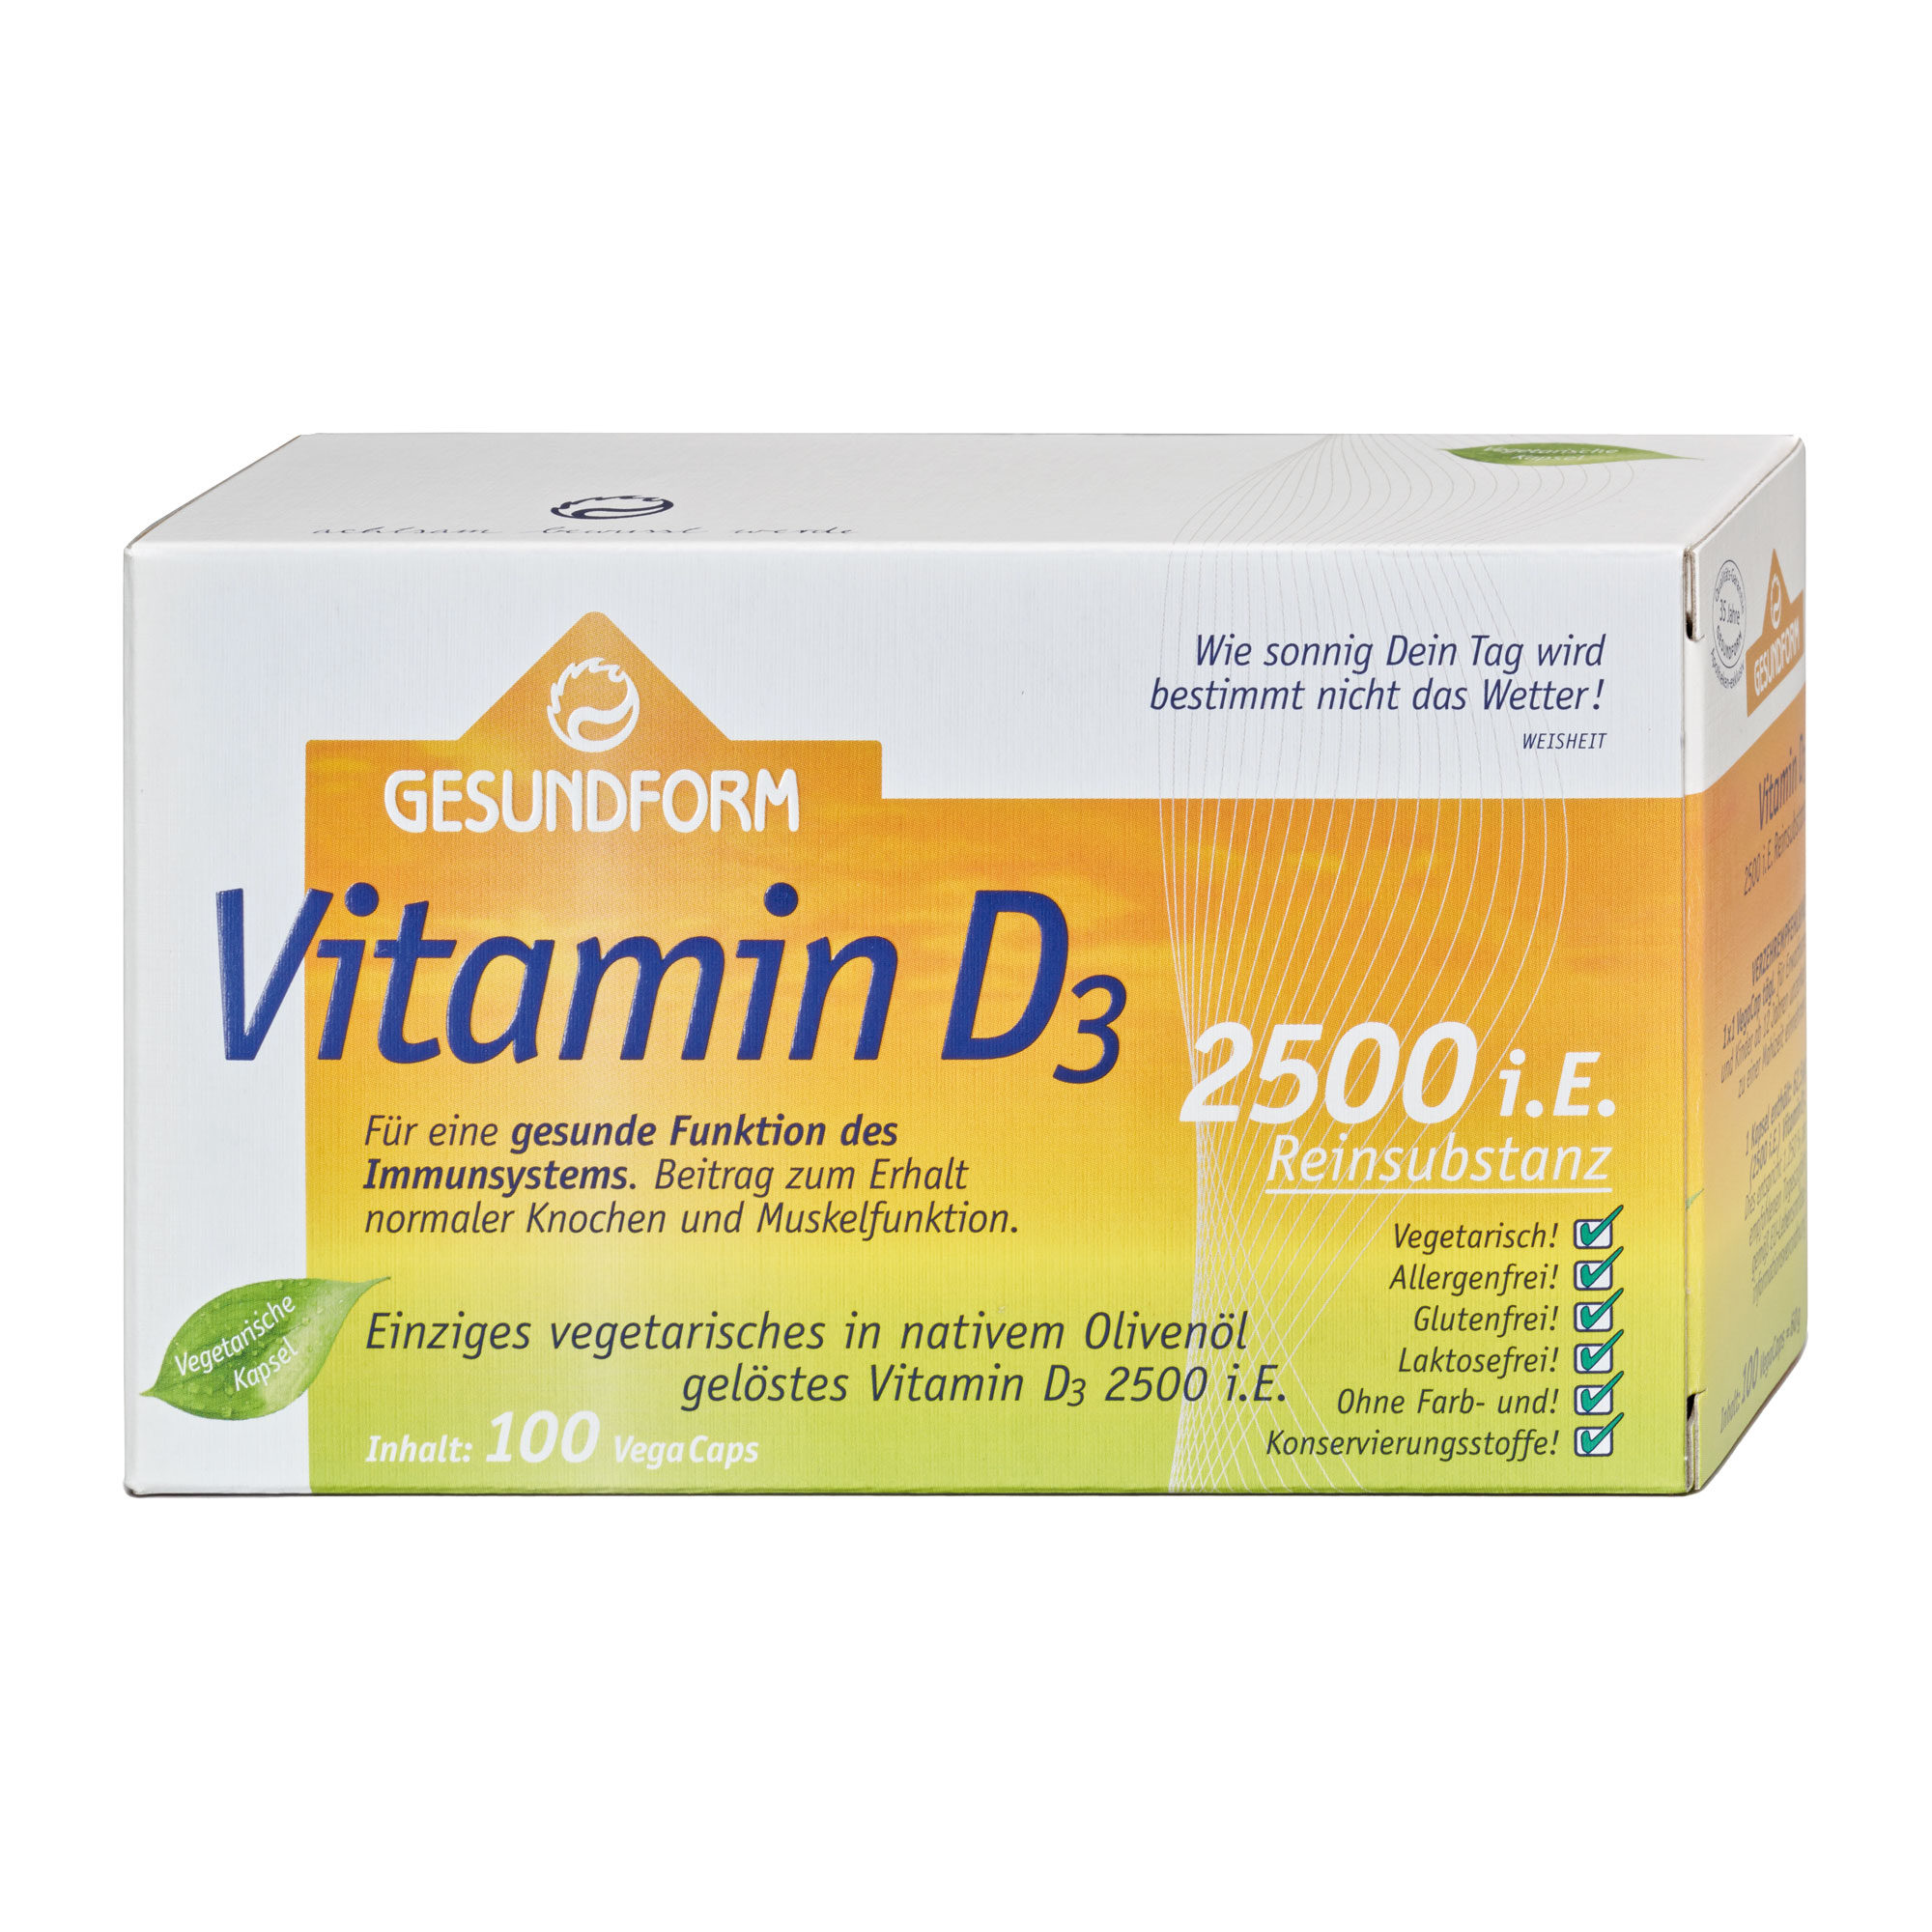 Nahrungsergänzungsmittel mit Vitamin D3 in einer vegetarischen Kapsel.